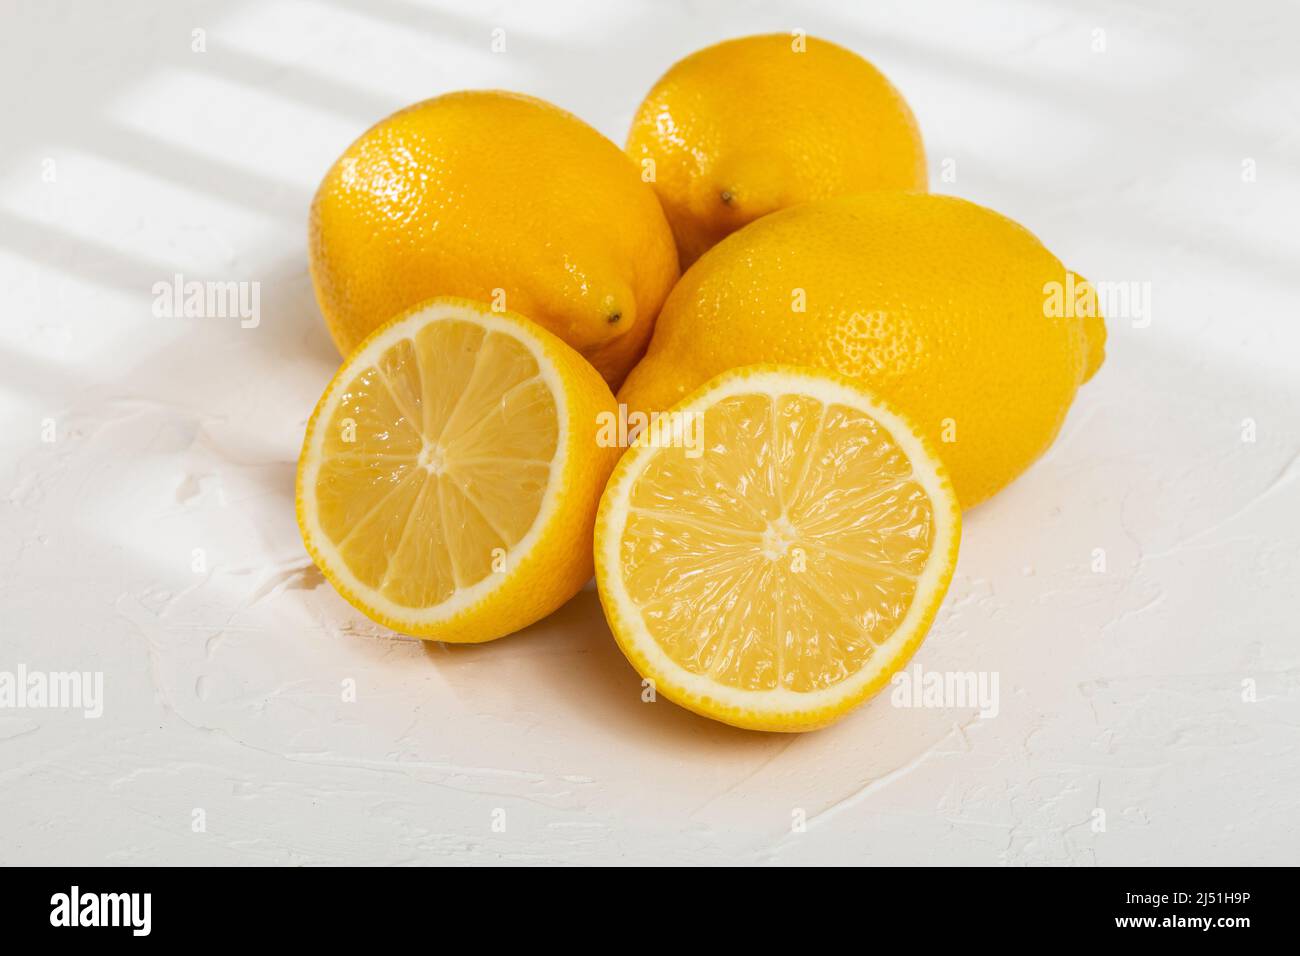 Frutta matura e fresca, limone giallo - Citrus meyeri Foto Stock